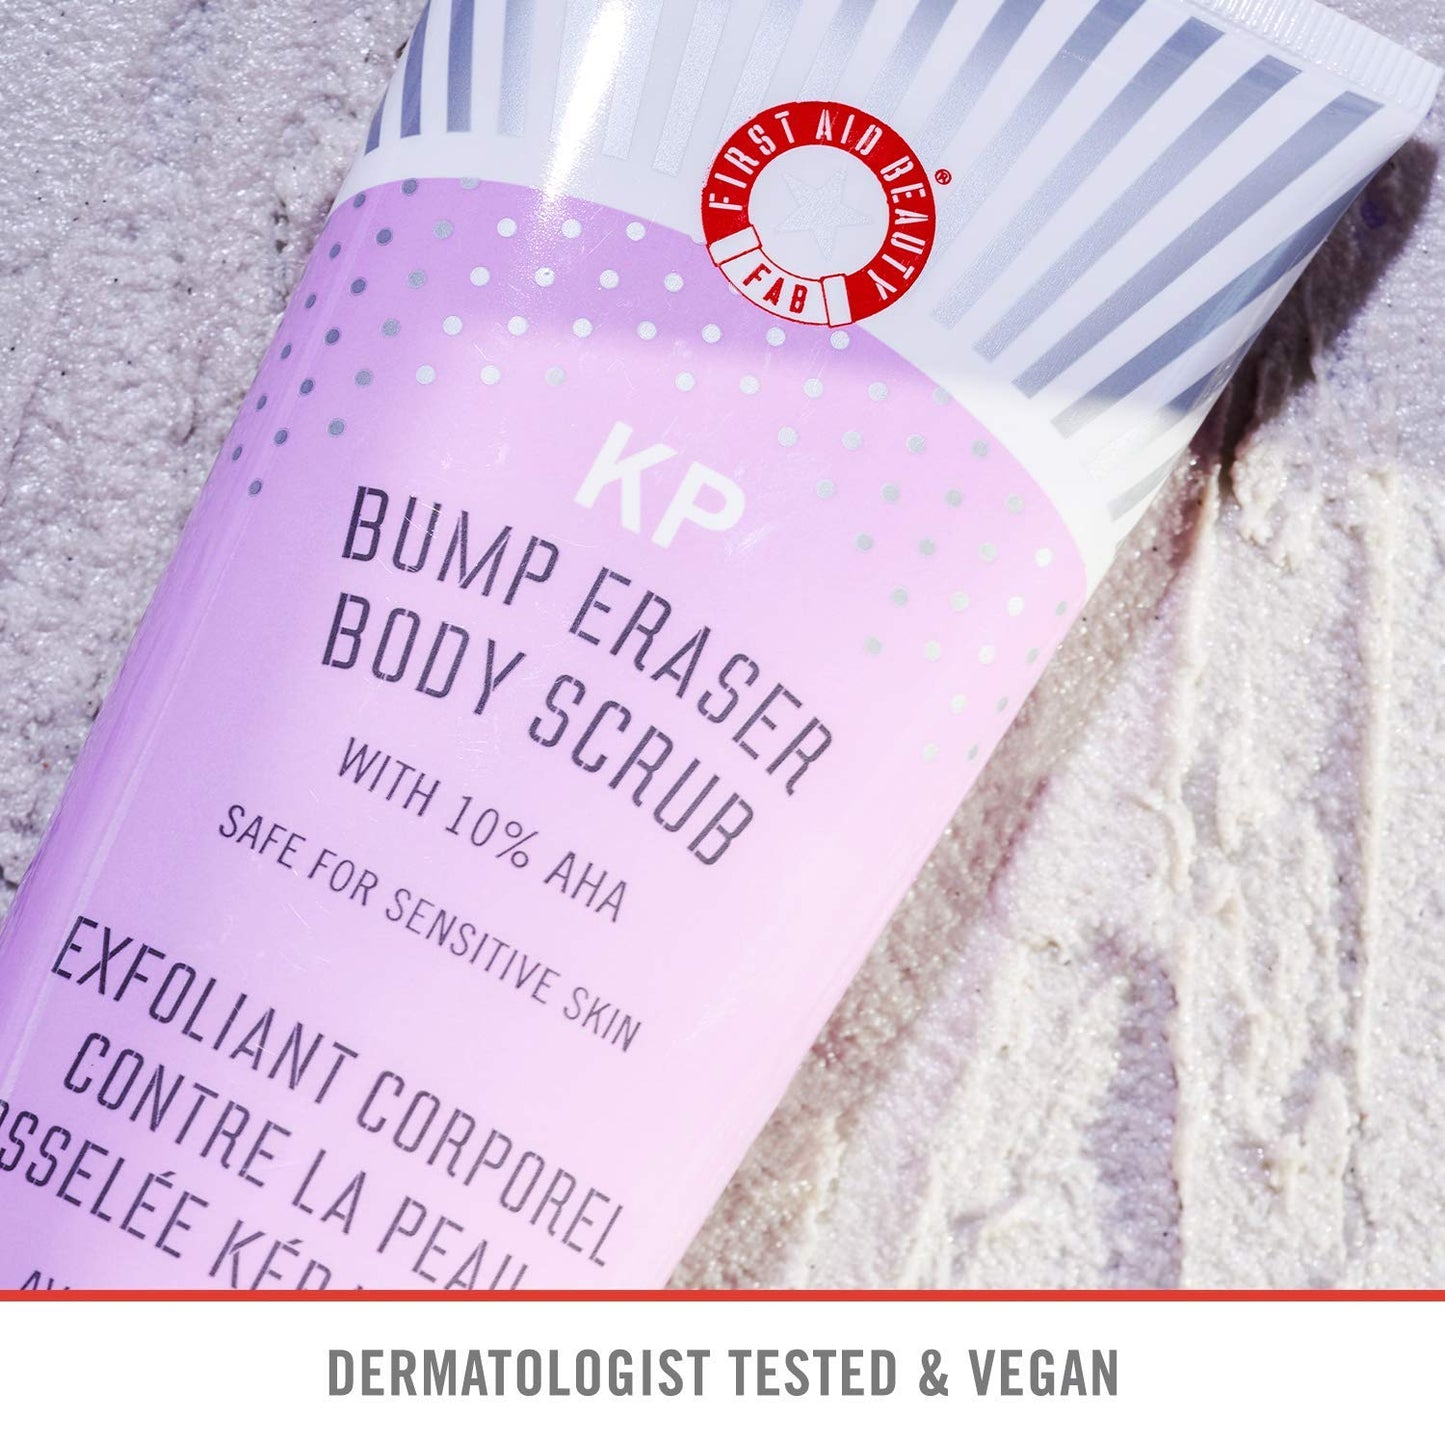 First Aid Beauty KP Bump Eraser Body Scrub 10% AHA, 56.7g